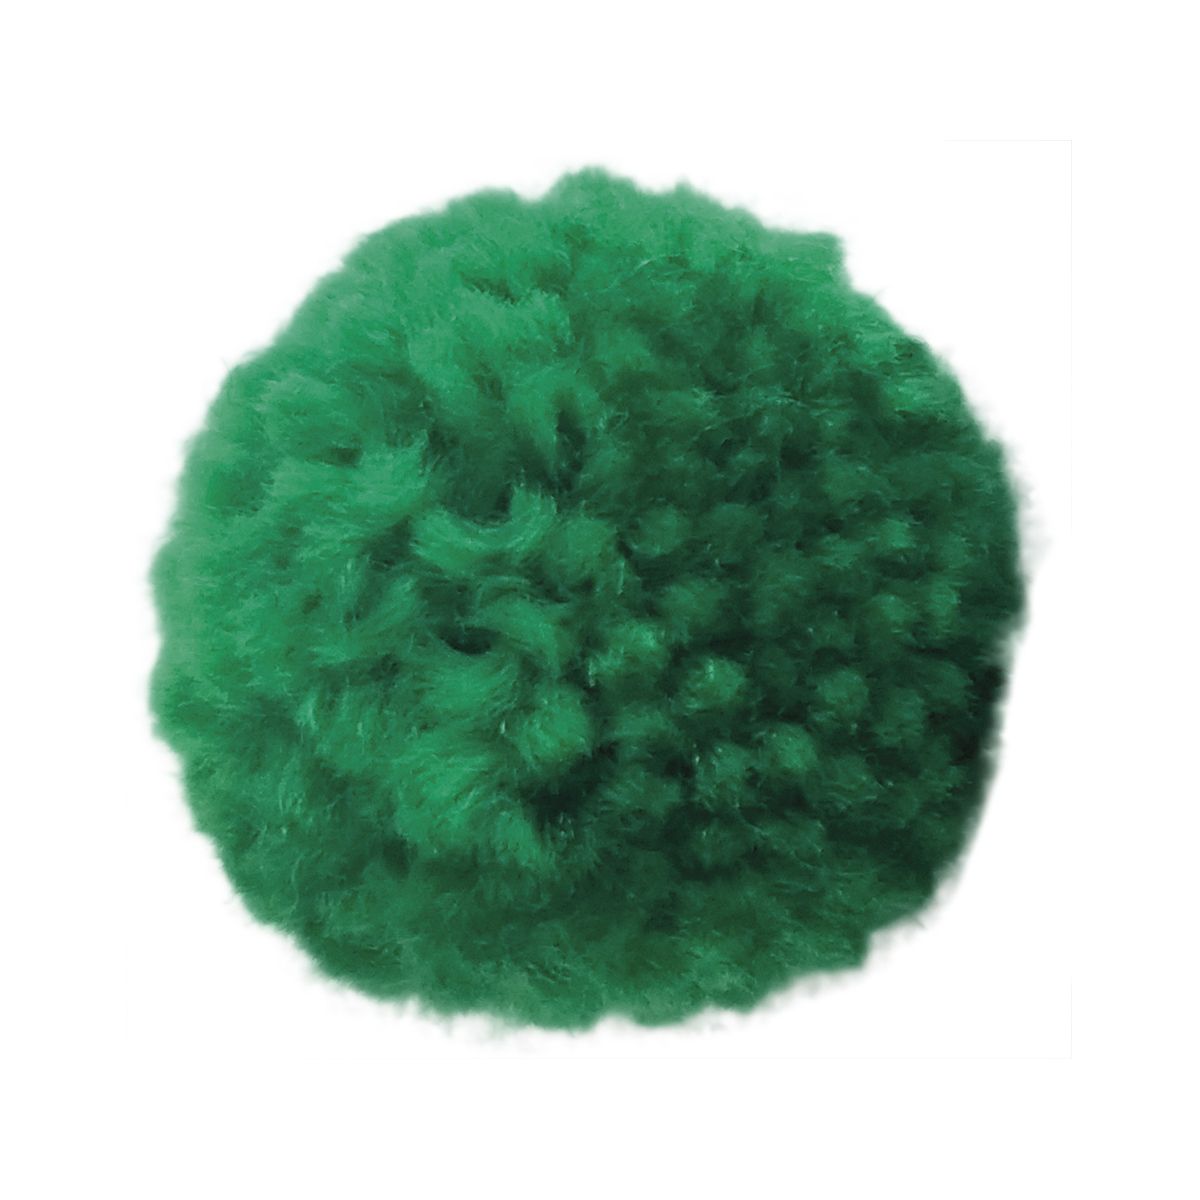 Pompony Titanum Craft-Fun Series zielone 6 szt